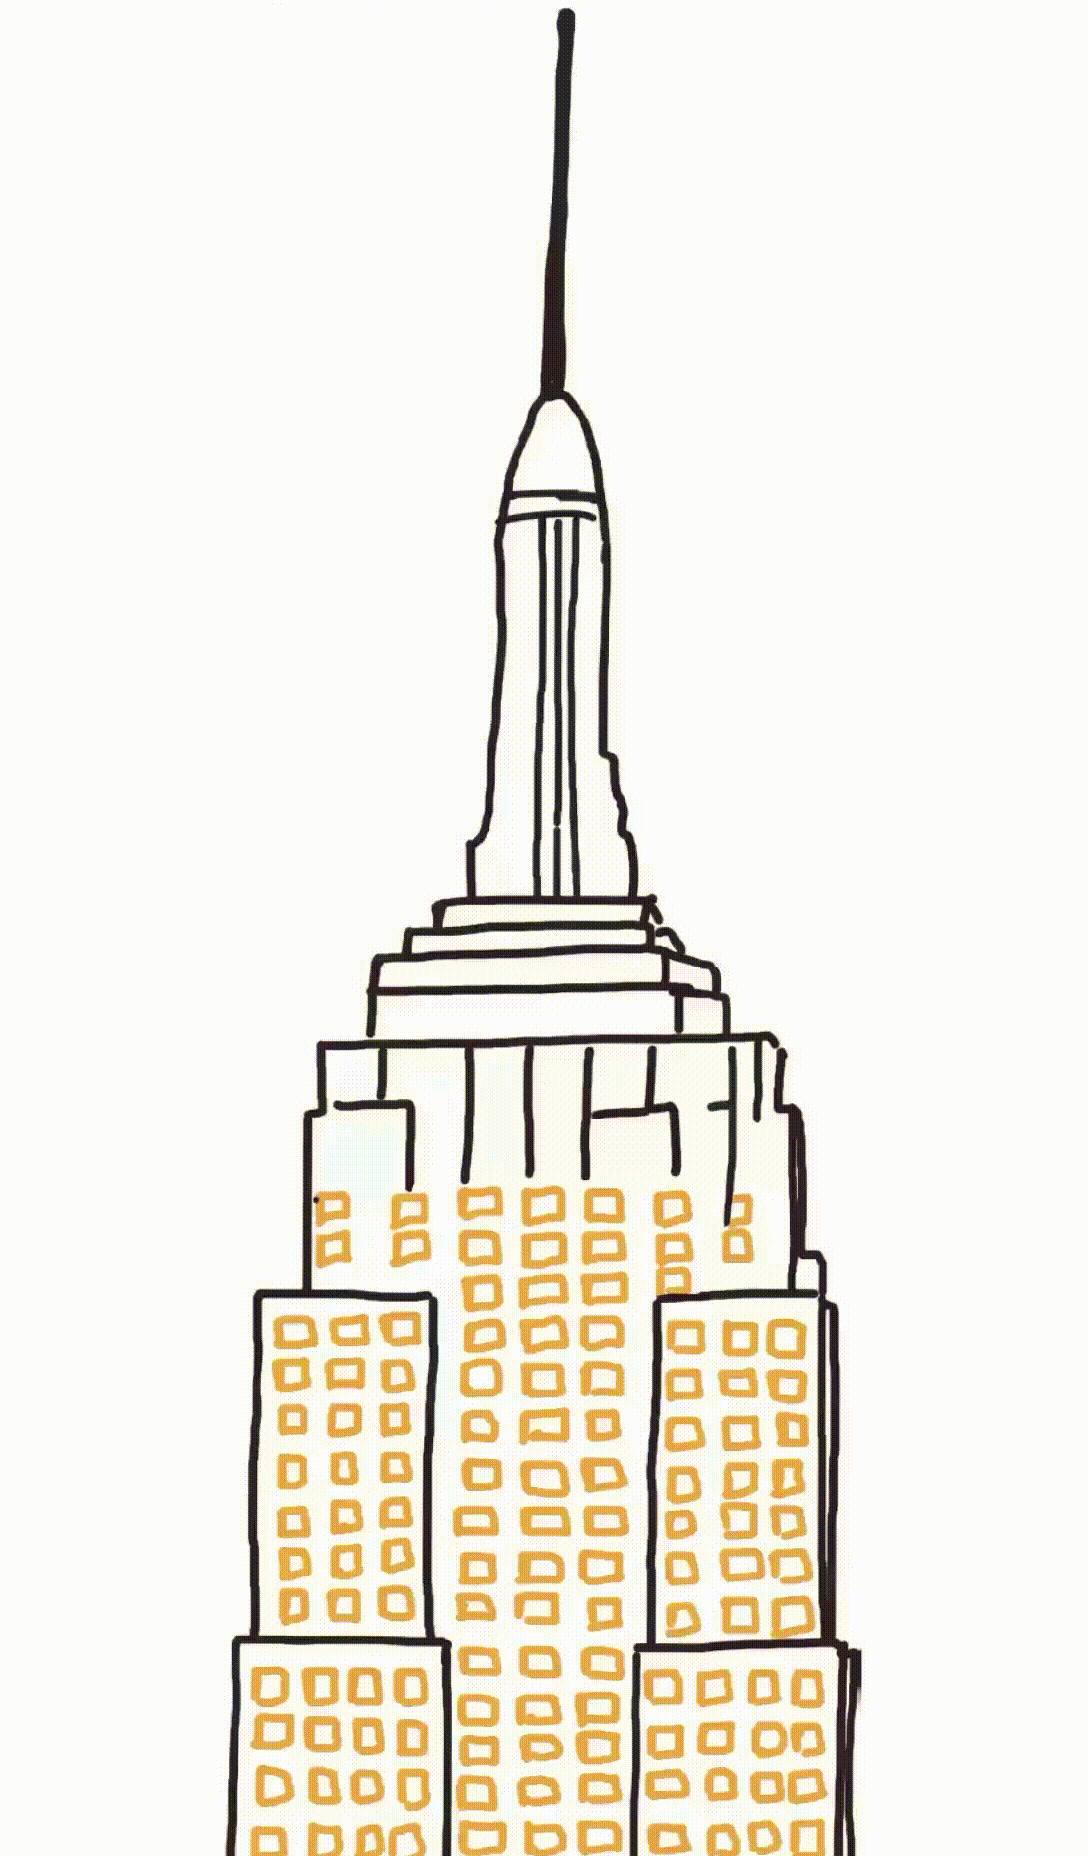 Une check-list géante en forme d'Empire State Building